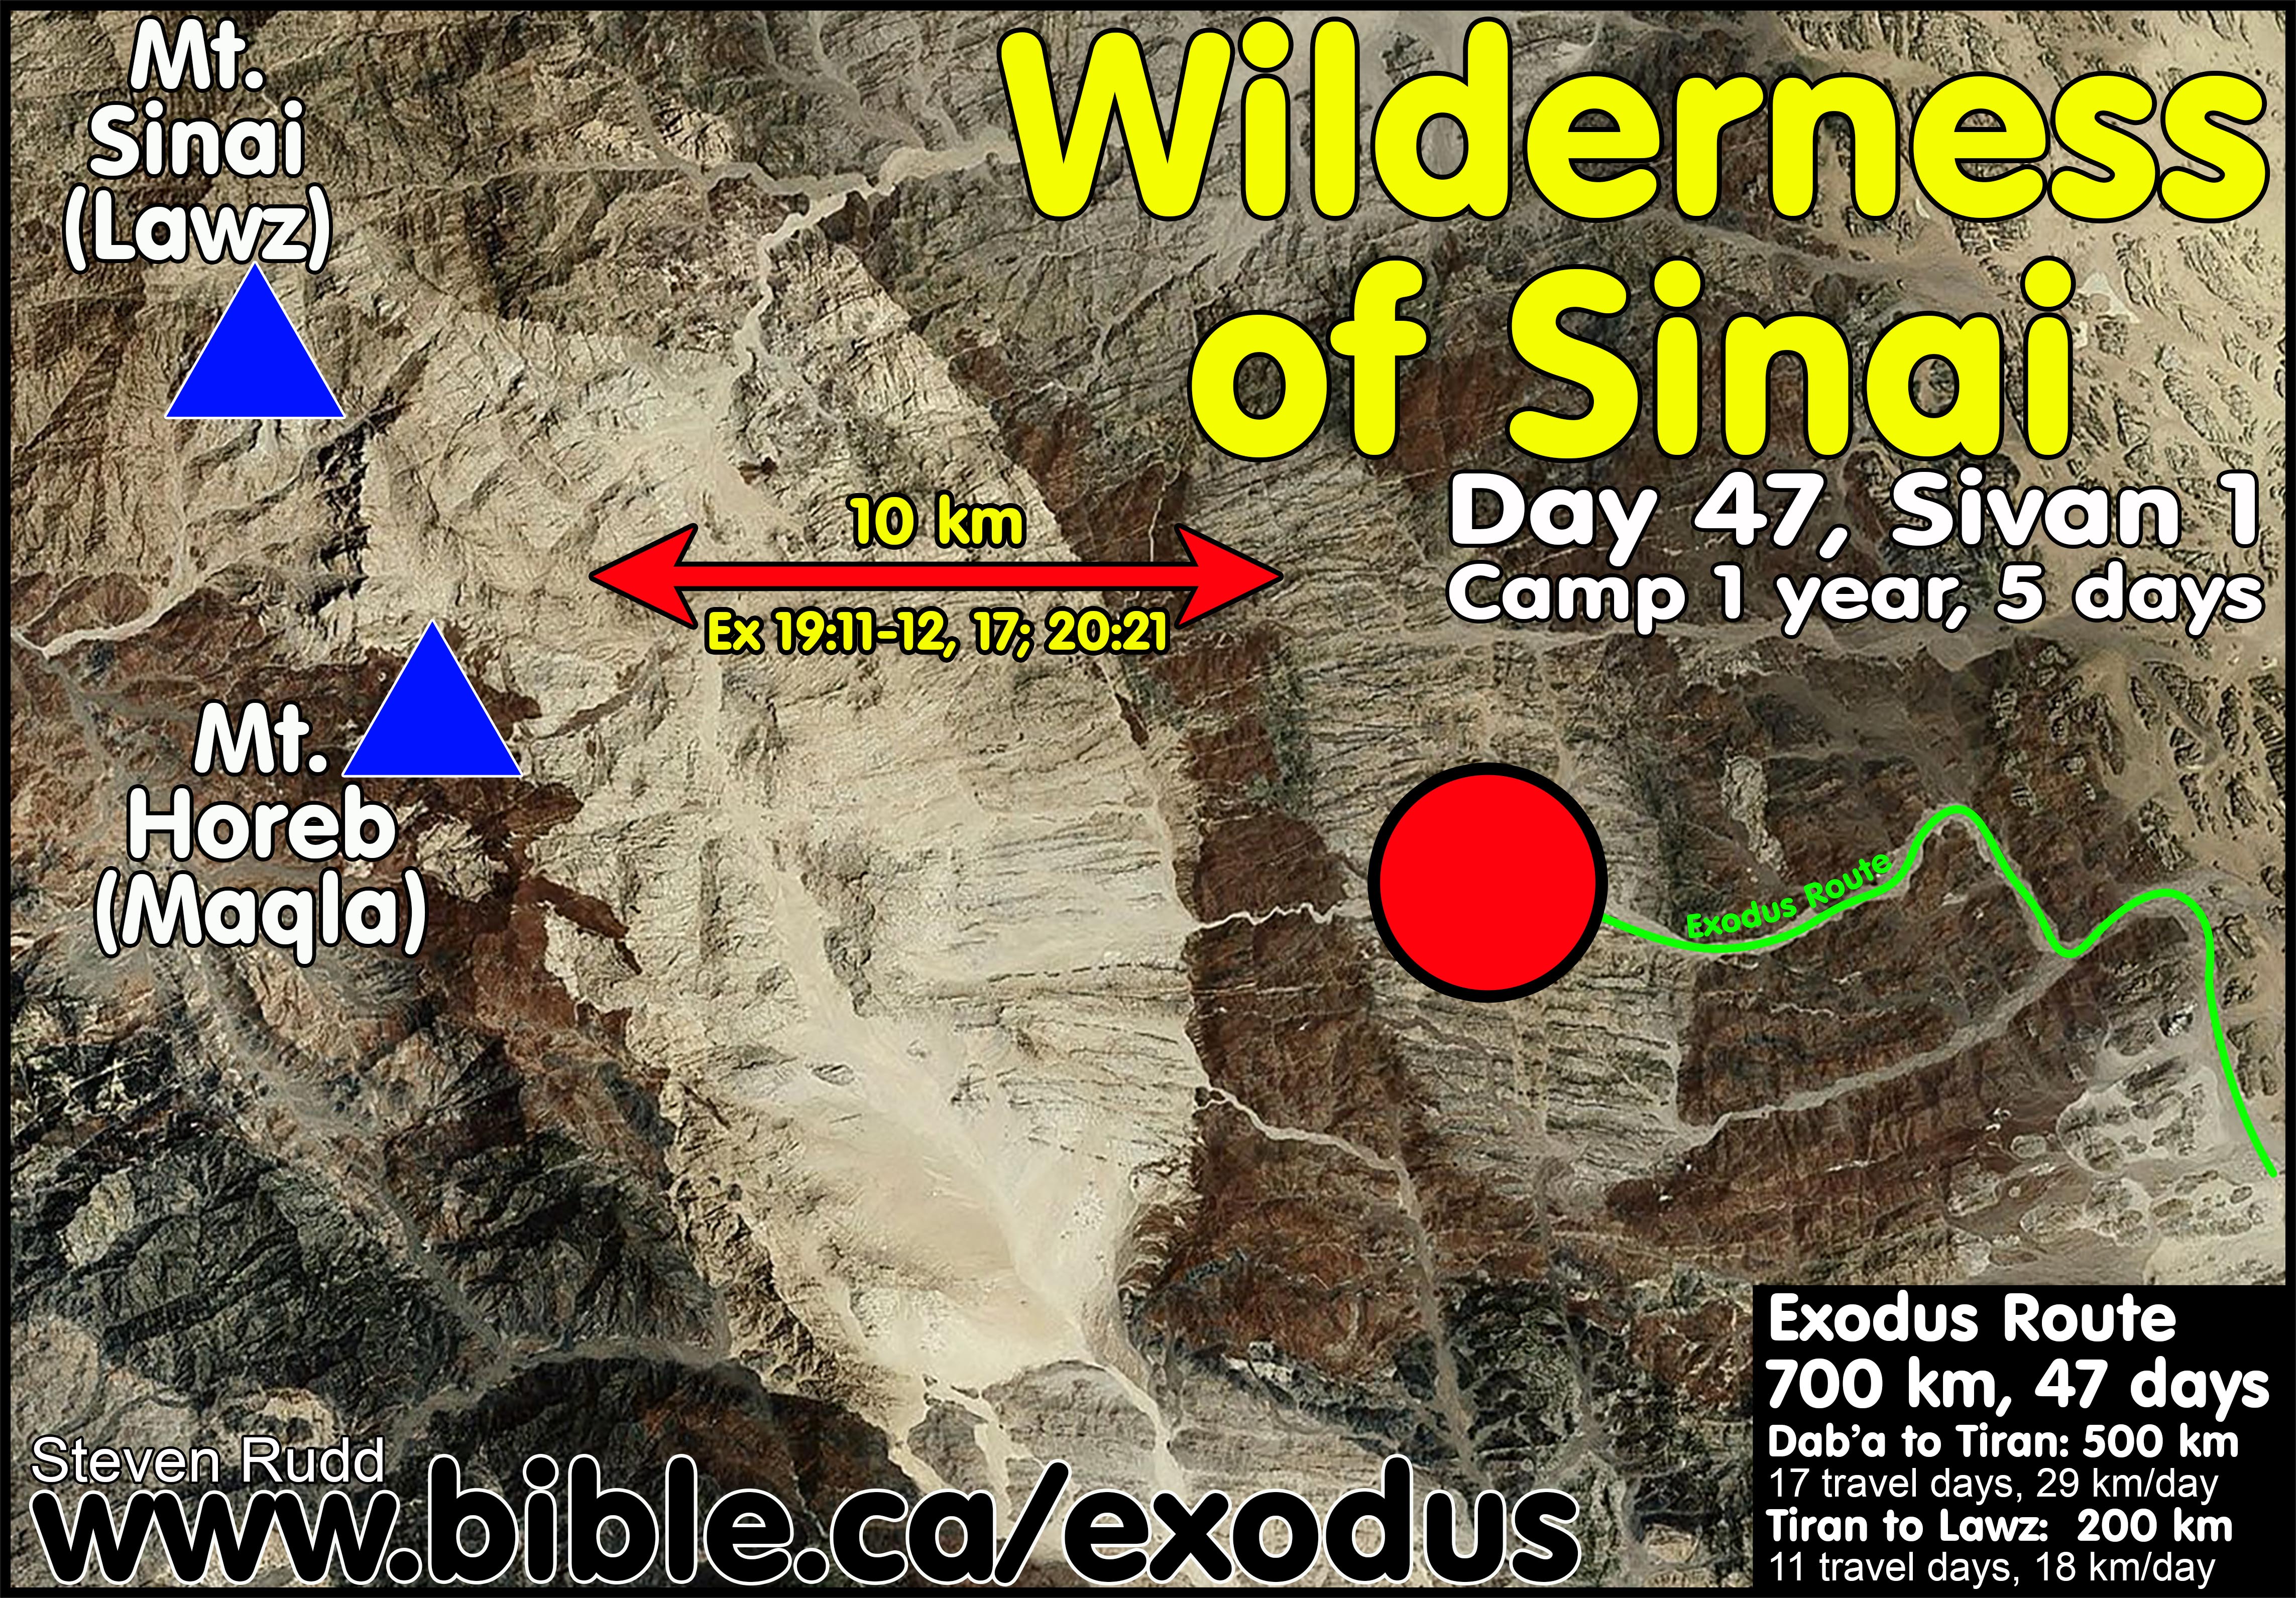 israelites journey through the wilderness